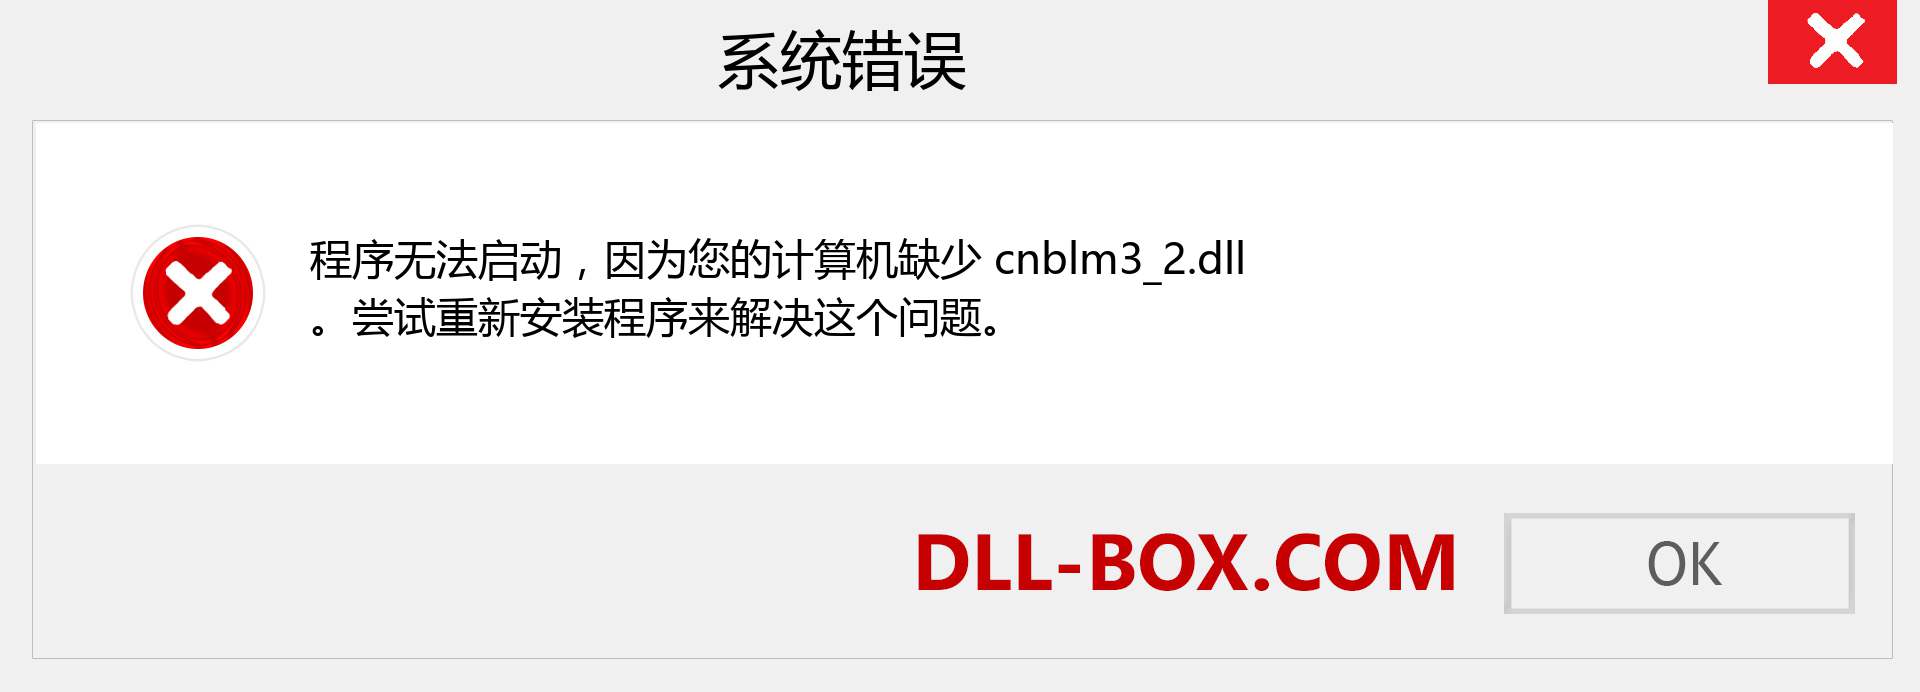 cnblm3_2.dll 文件丢失？。 适用于 Windows 7、8、10 的下载 - 修复 Windows、照片、图像上的 cnblm3_2 dll 丢失错误